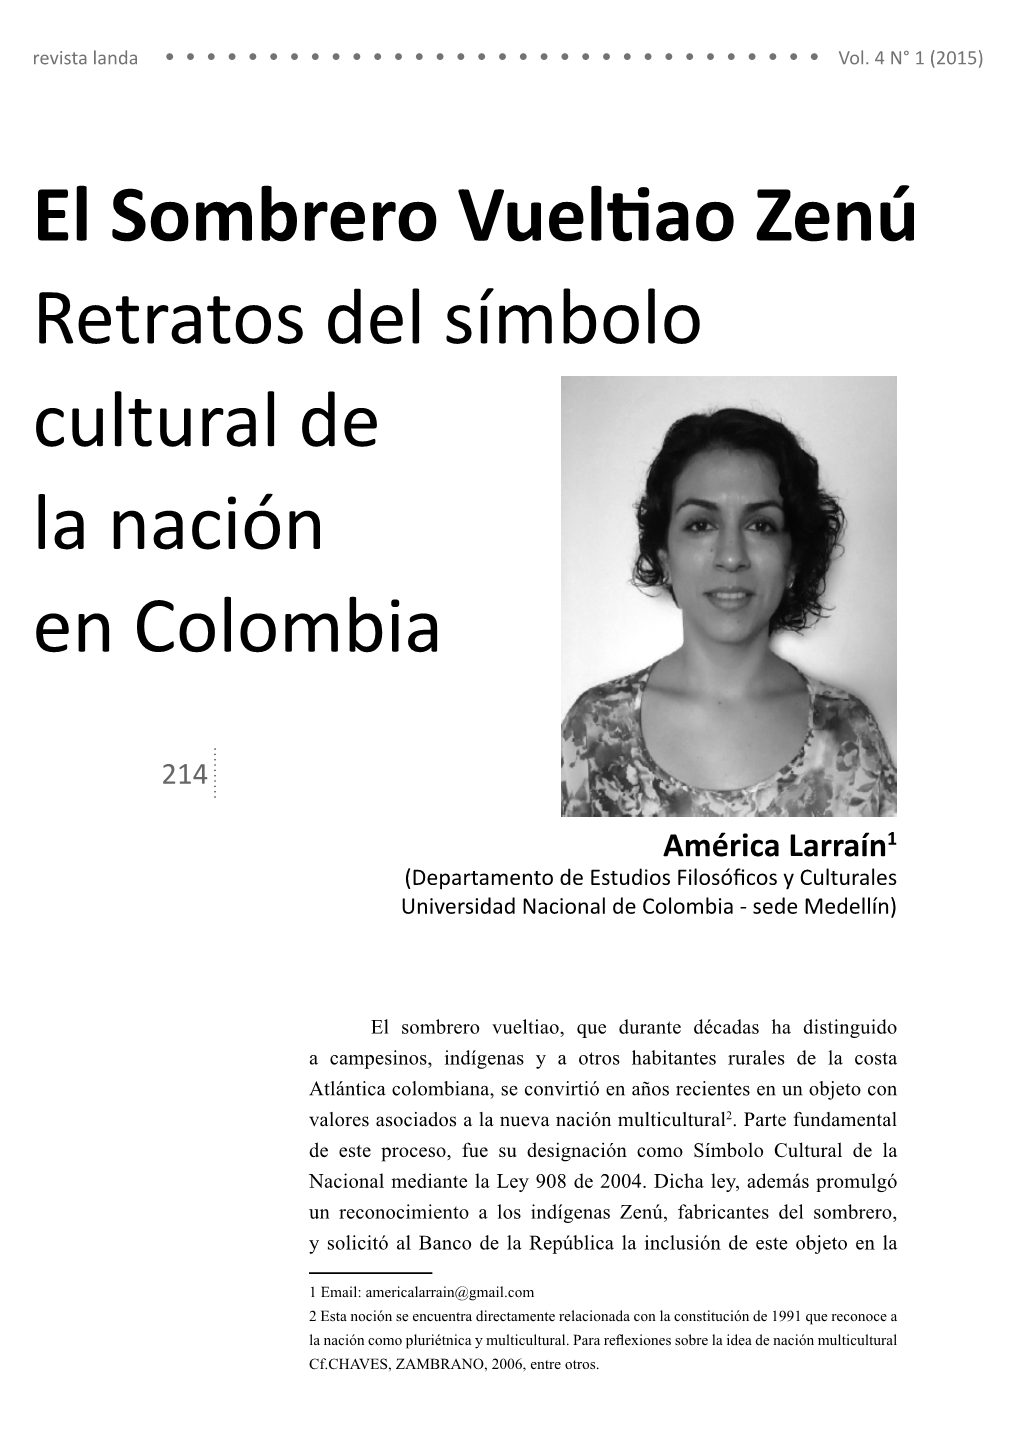 El Sombrero Vueltiao Zenú Retratos Del Símbolo Cultural De La Nación En Colombia